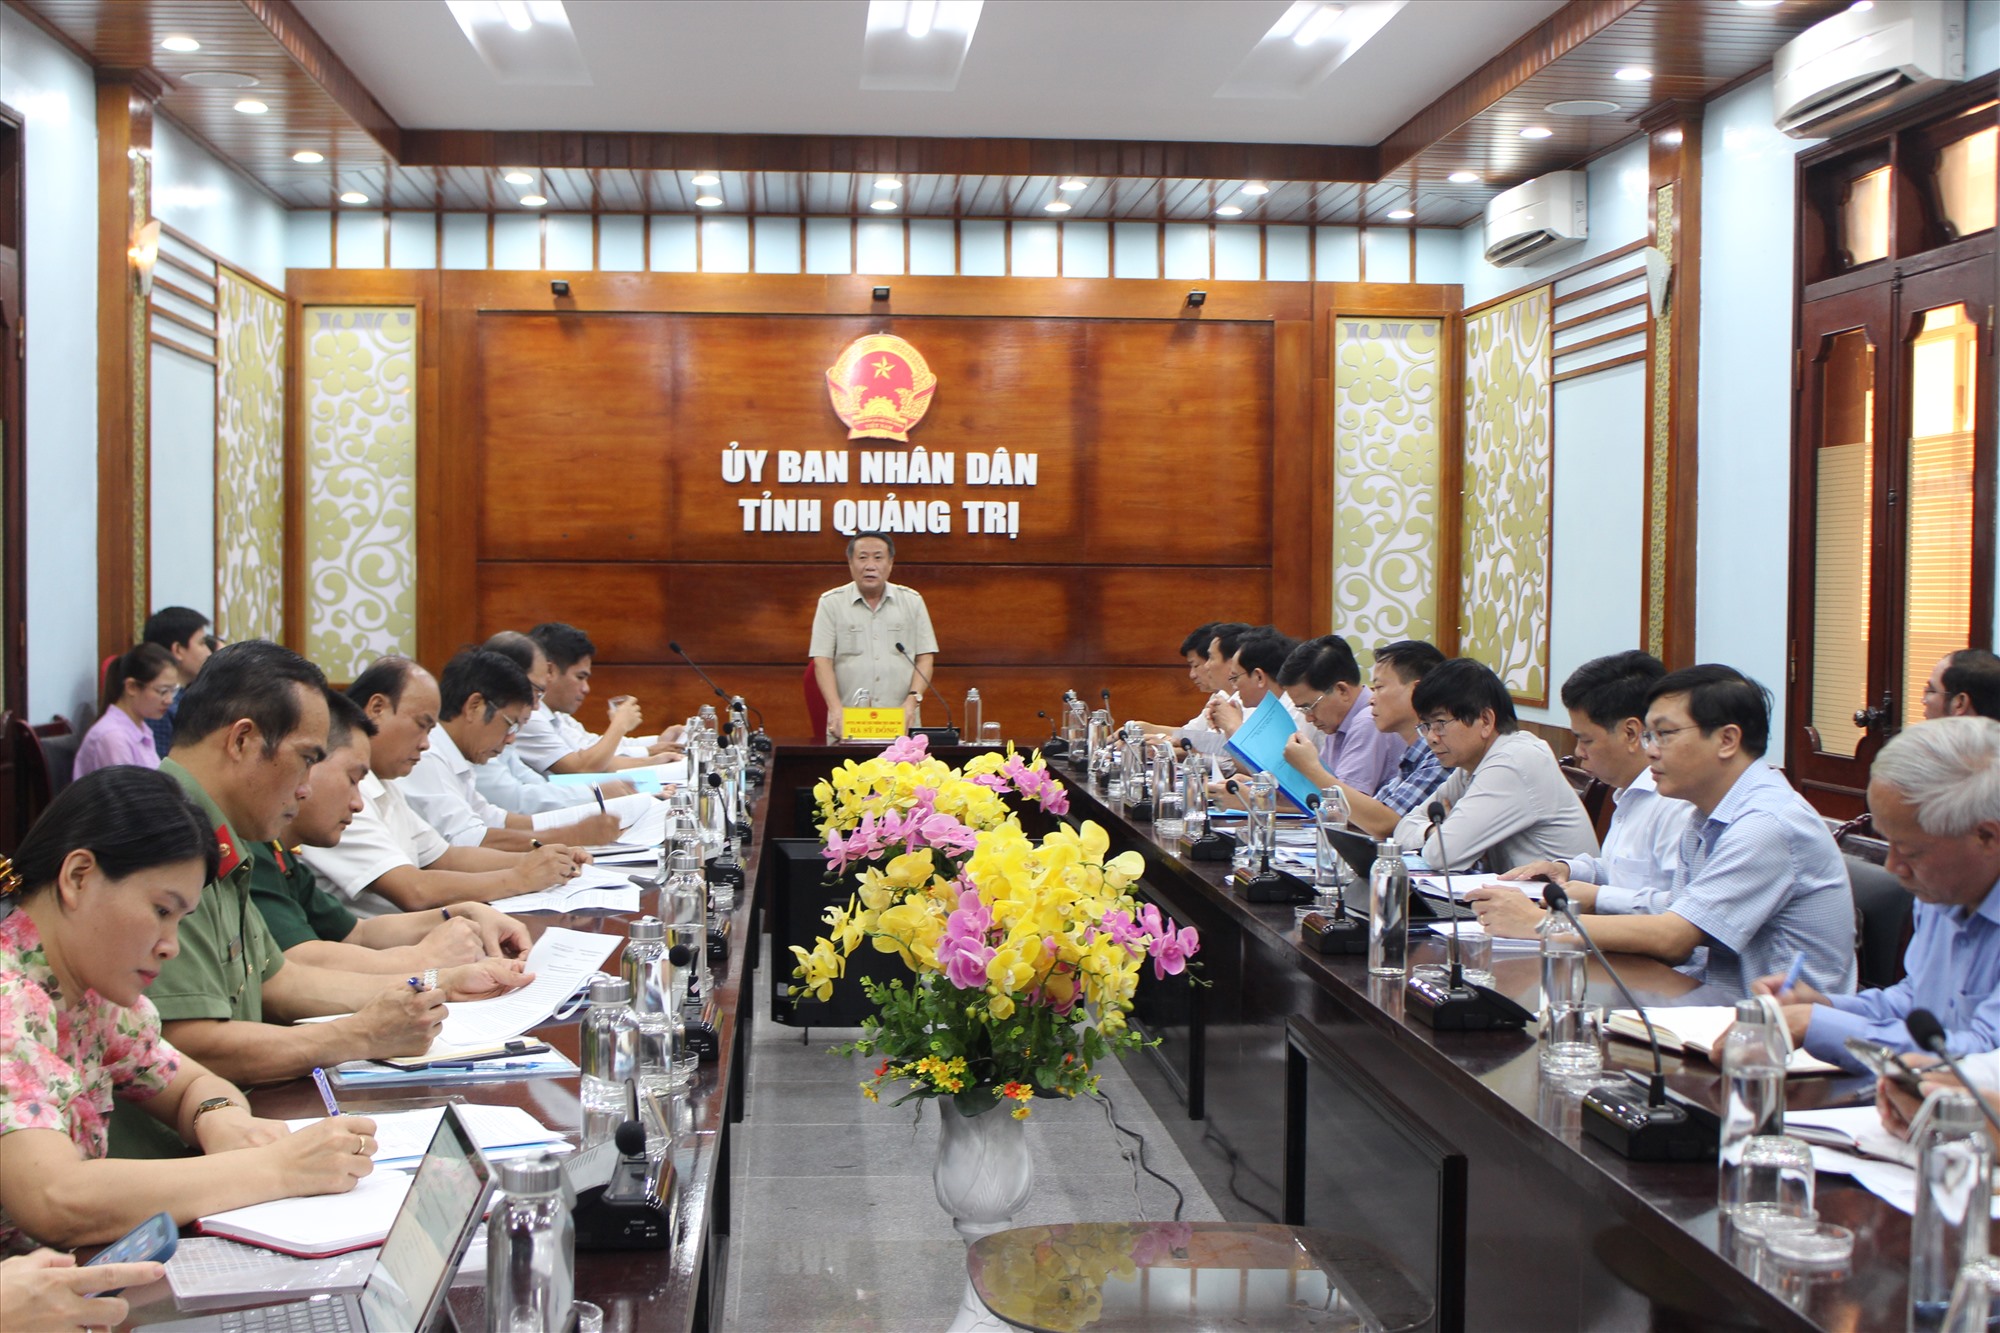 Phó Chủ tịch Thường trực UBND tỉnh Hà Sỹ Đồng kết luận cuộc họp - Ảnh: T.T